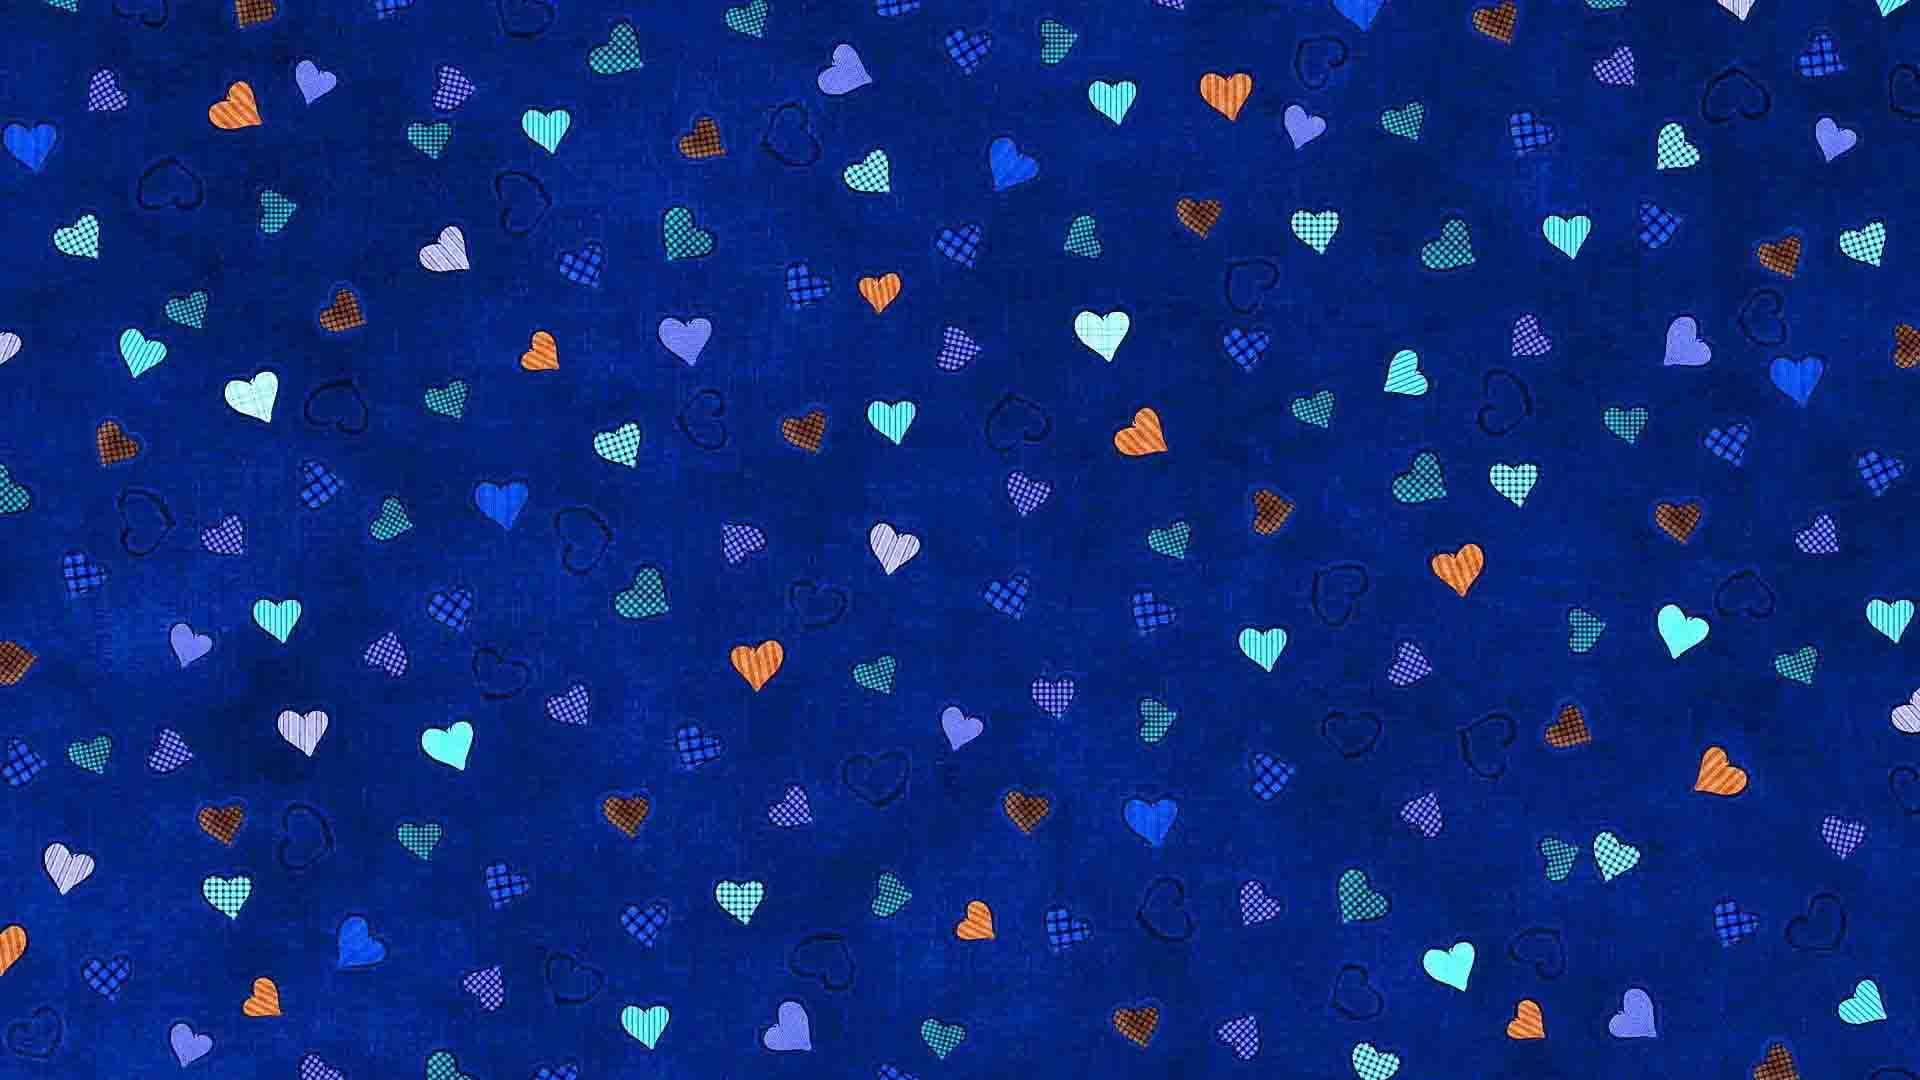 Hình ảnh chăn trái tim xanh